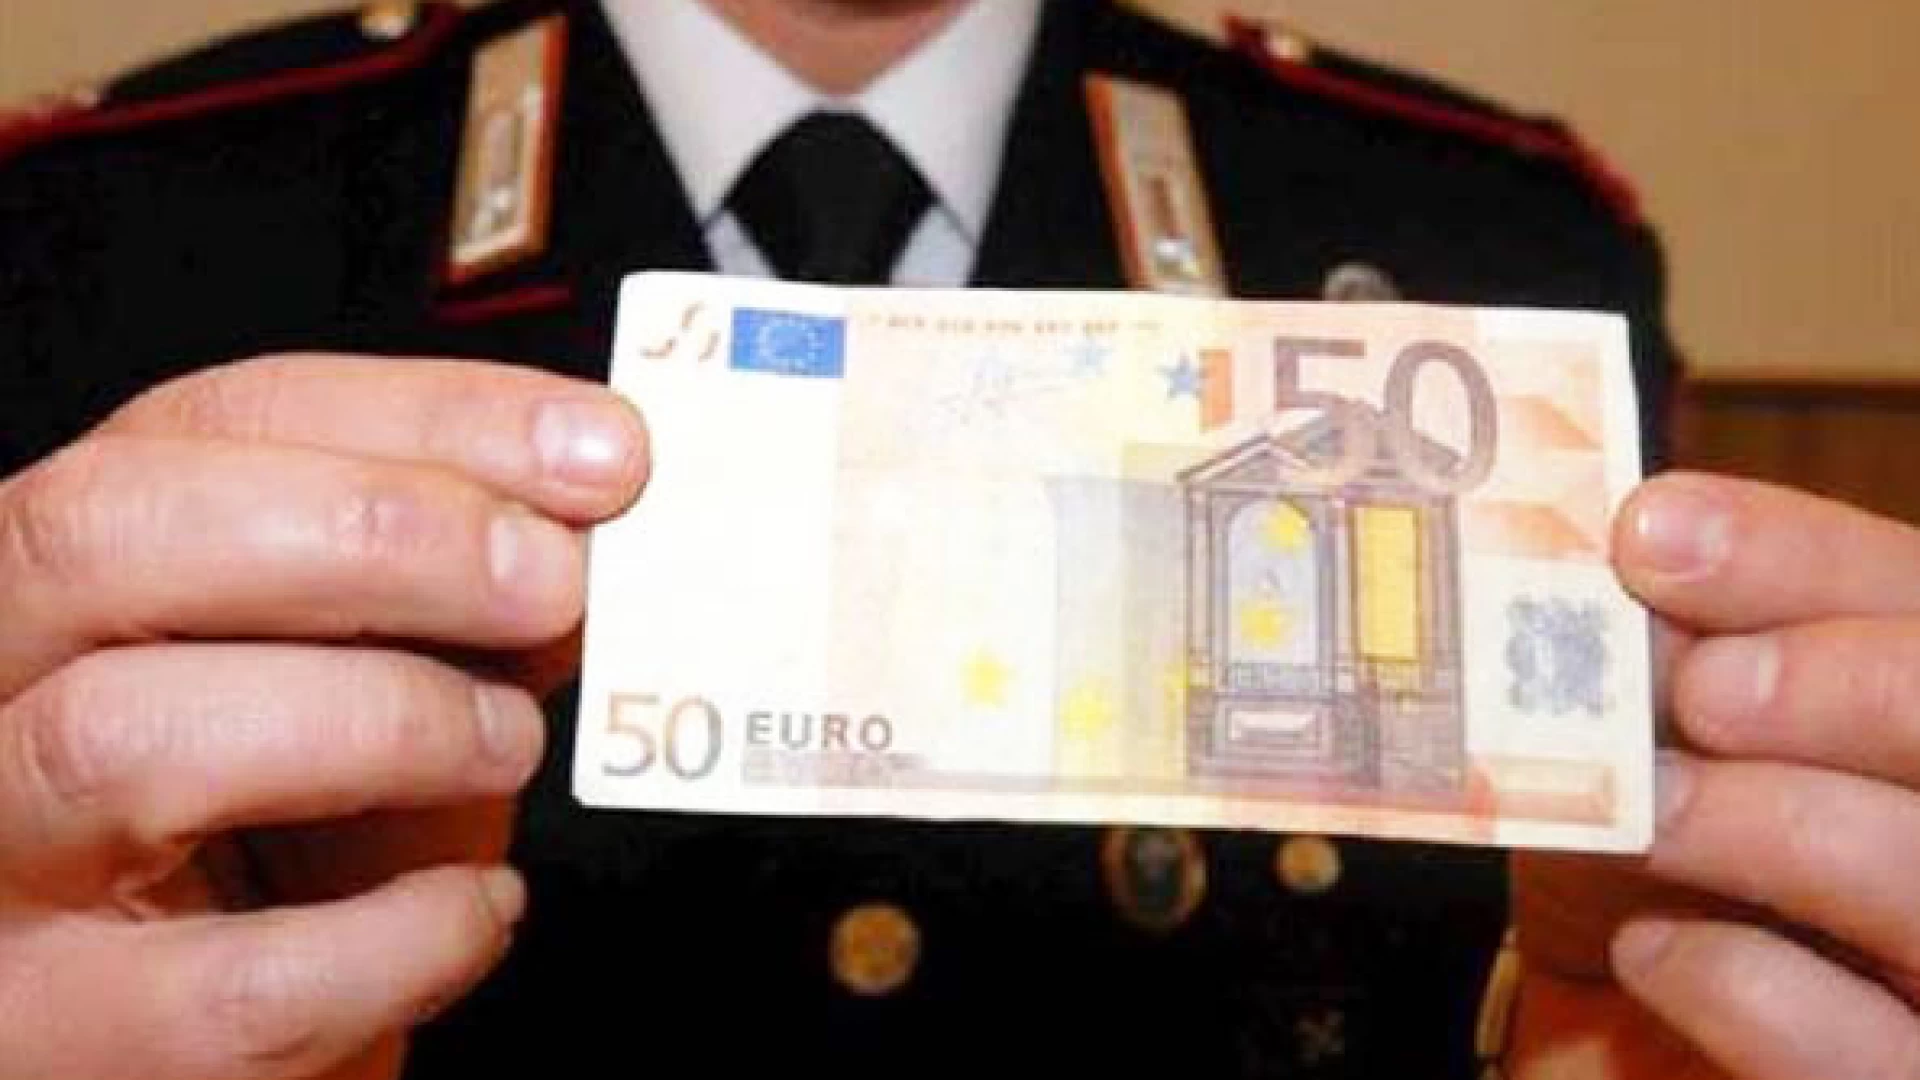 Isernia: stava spacciando banconote false da 50 euro, 30 enne del posto fermato dai Carabinieri.